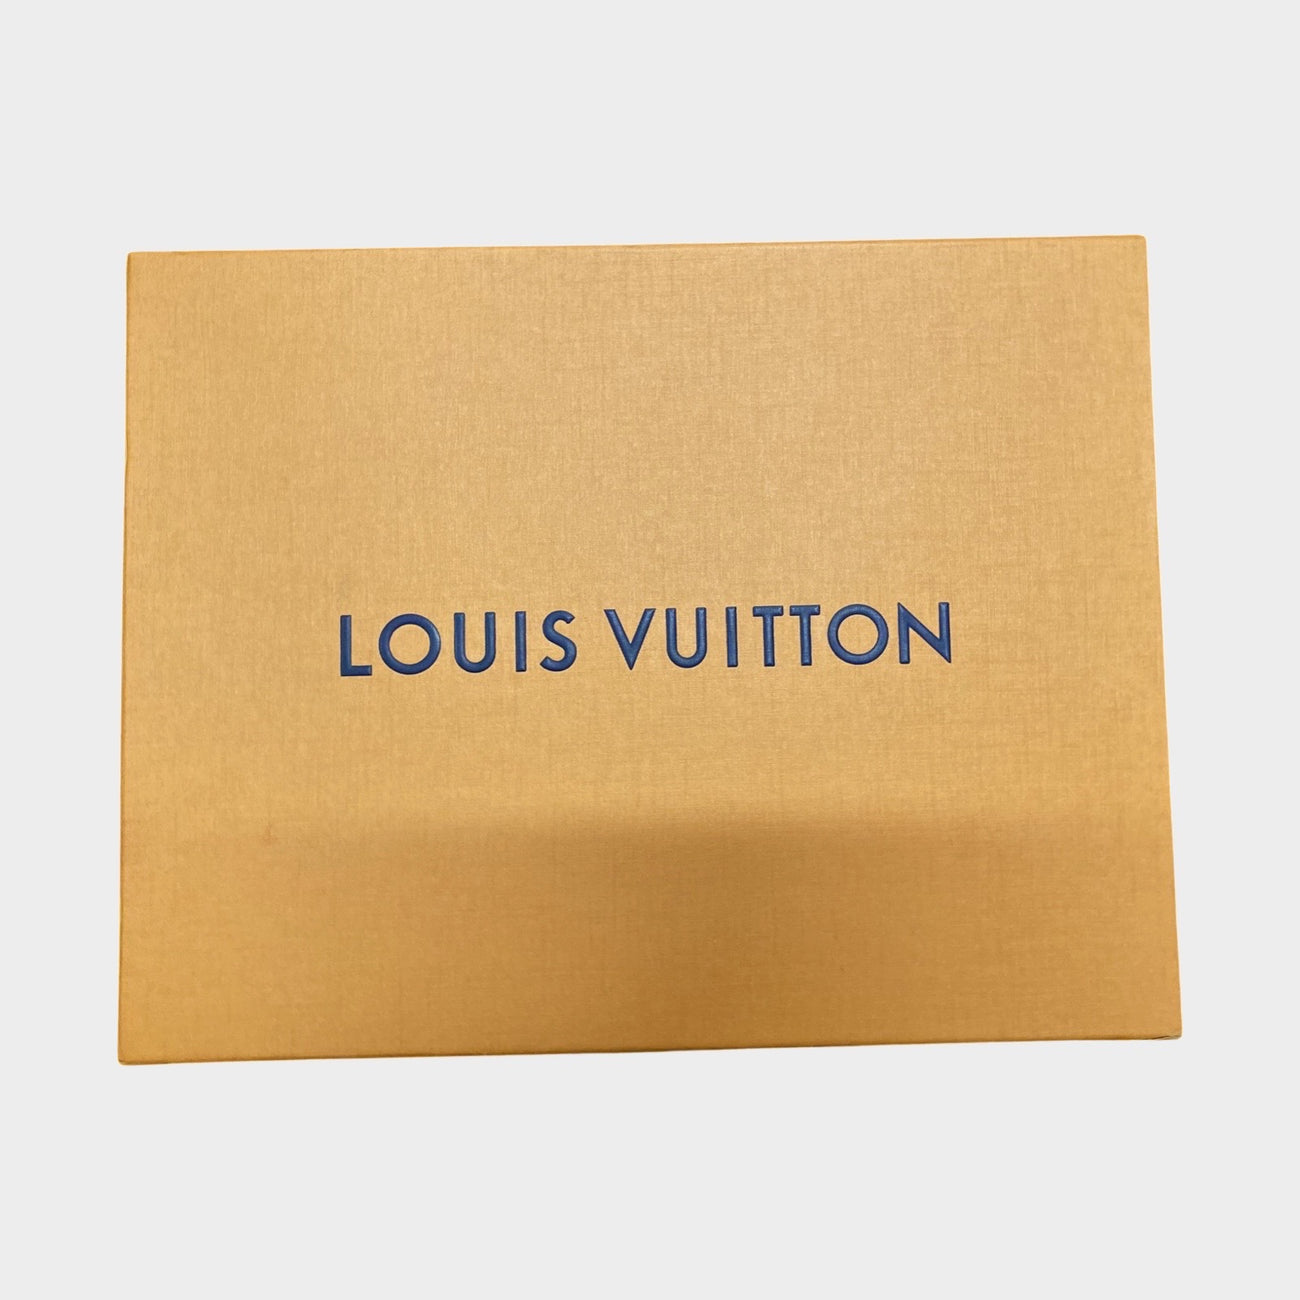 Louis Vuitton® Kensington Chelsea Boot Black. Size 06.5  Chelsea boots,  Kensington and chelsea, Louis vuitton kensington